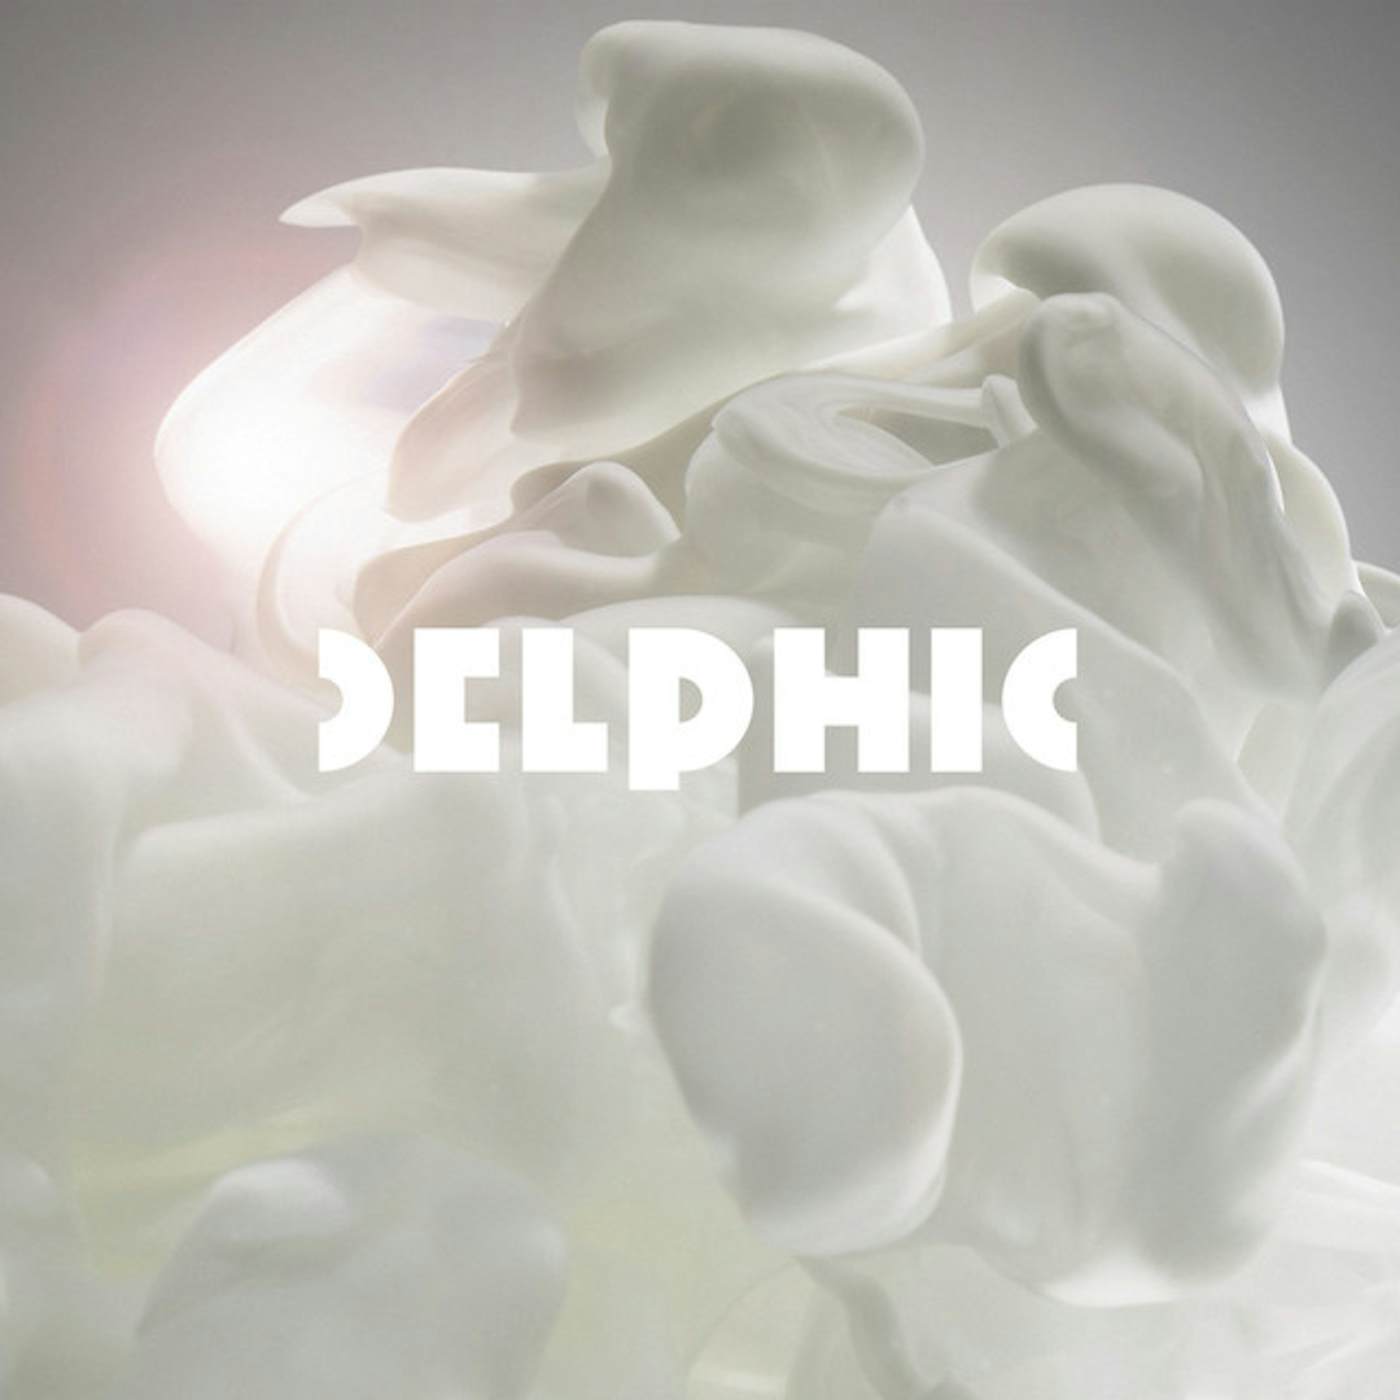 Delphic Counterpoint Vinyl Record